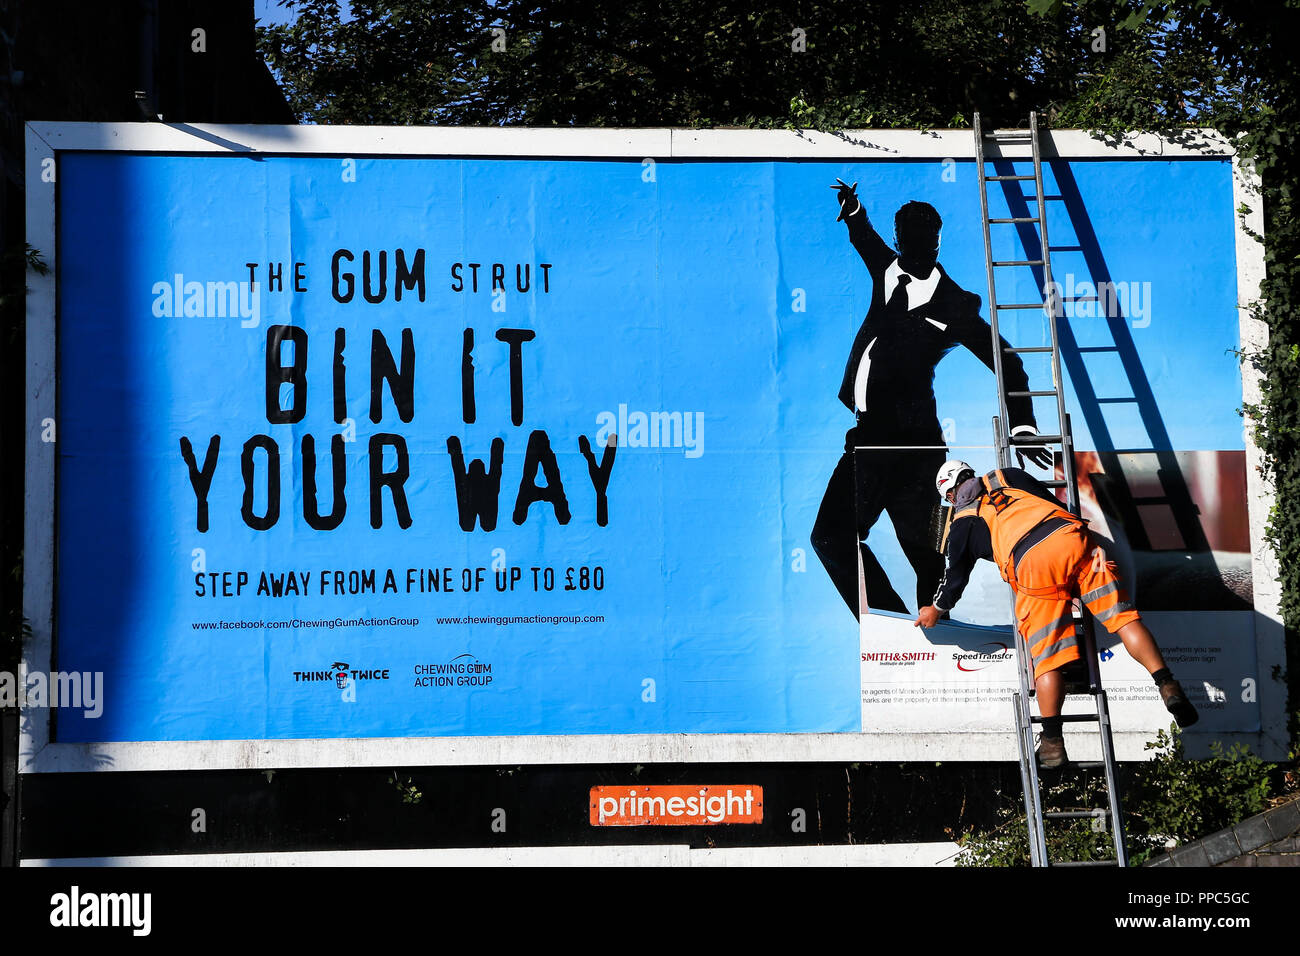 Chewing gum bin immagini e fotografie stock ad alta risoluzione - Alamy